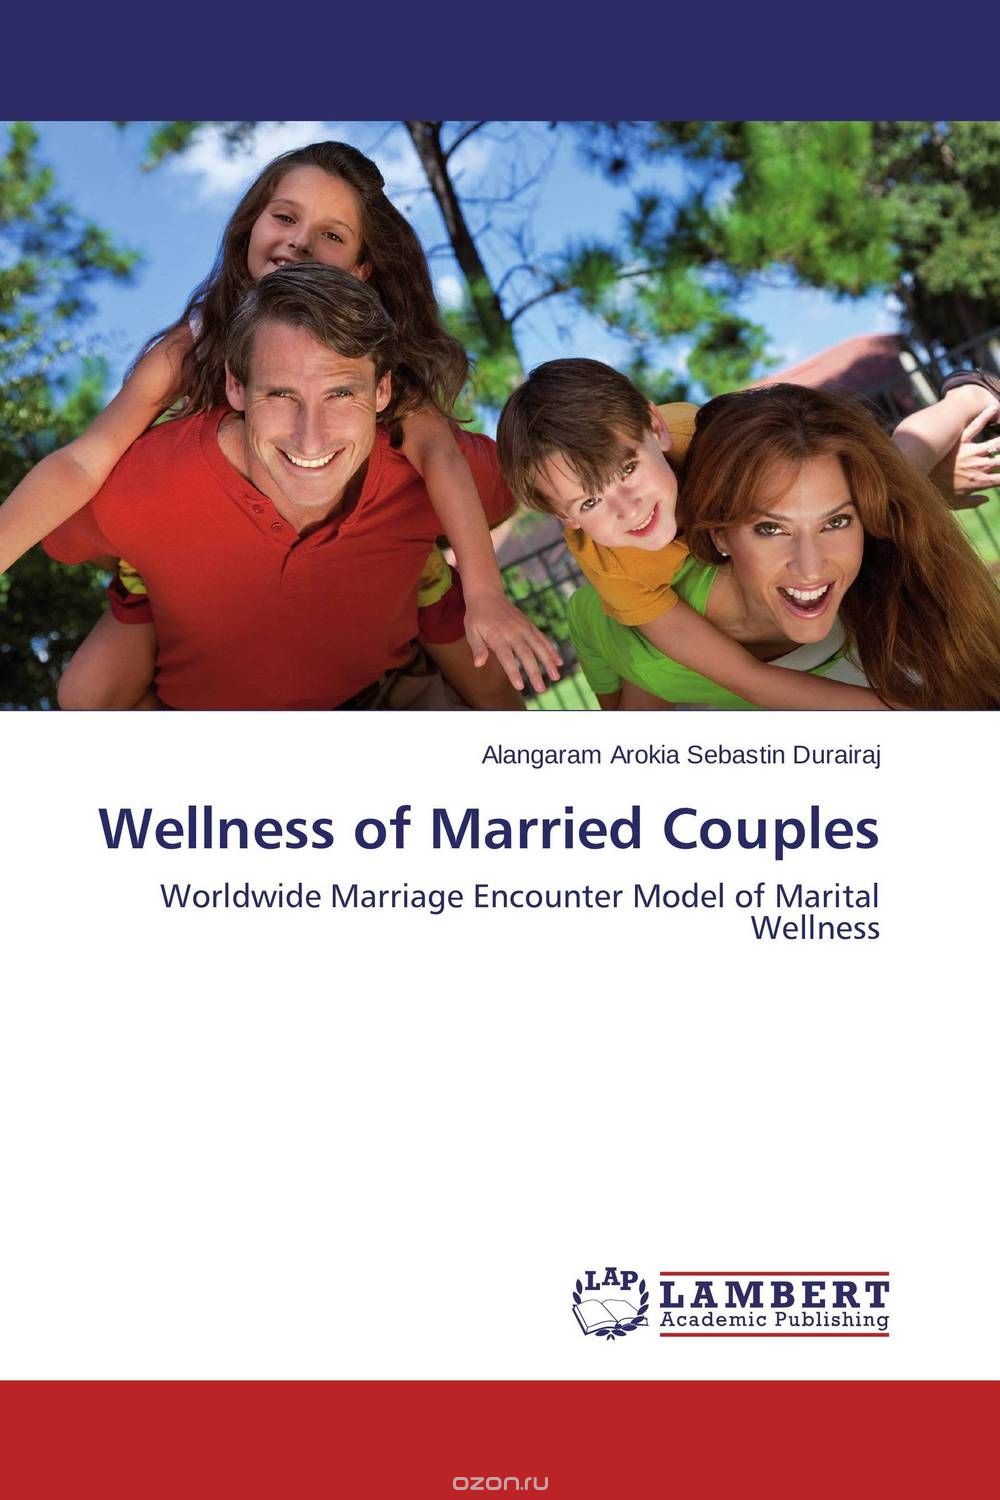 Скачать книгу "Wellness of Married Couples"